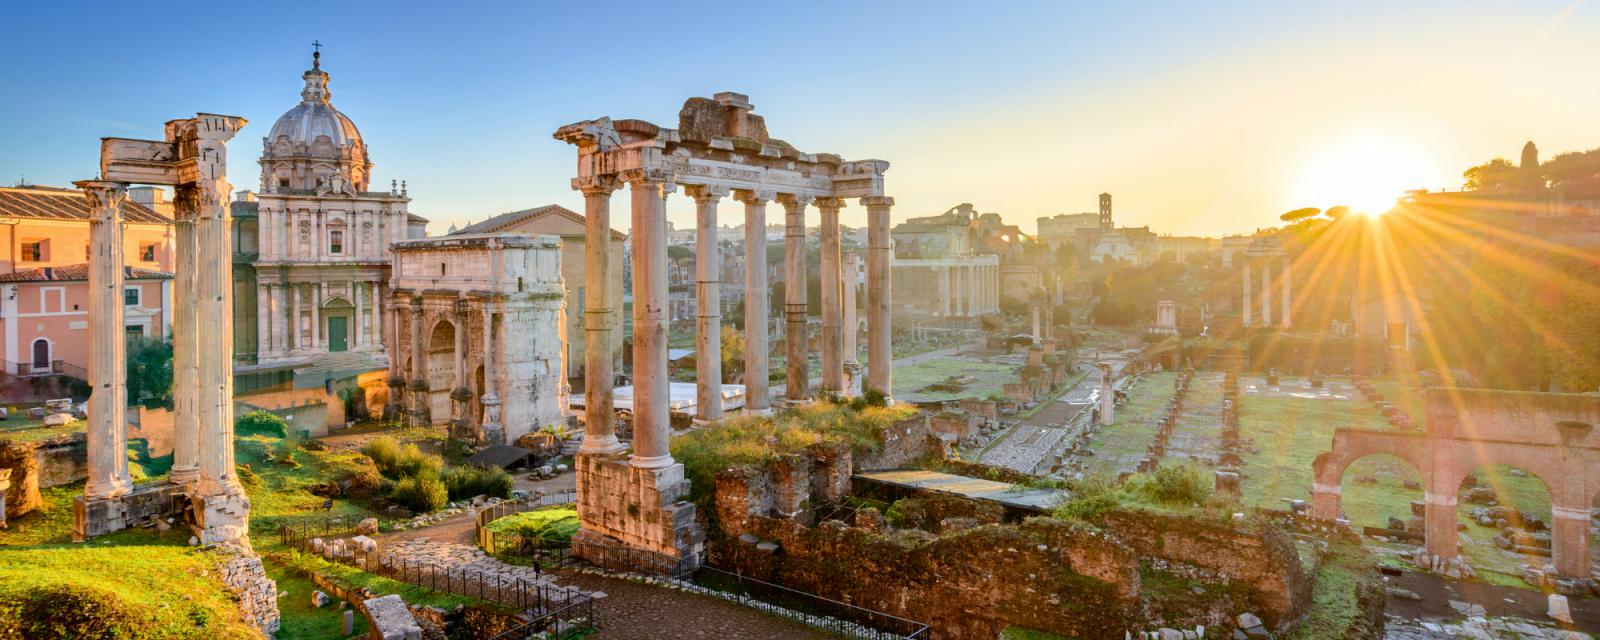 5x de leukste wijken van Rome 